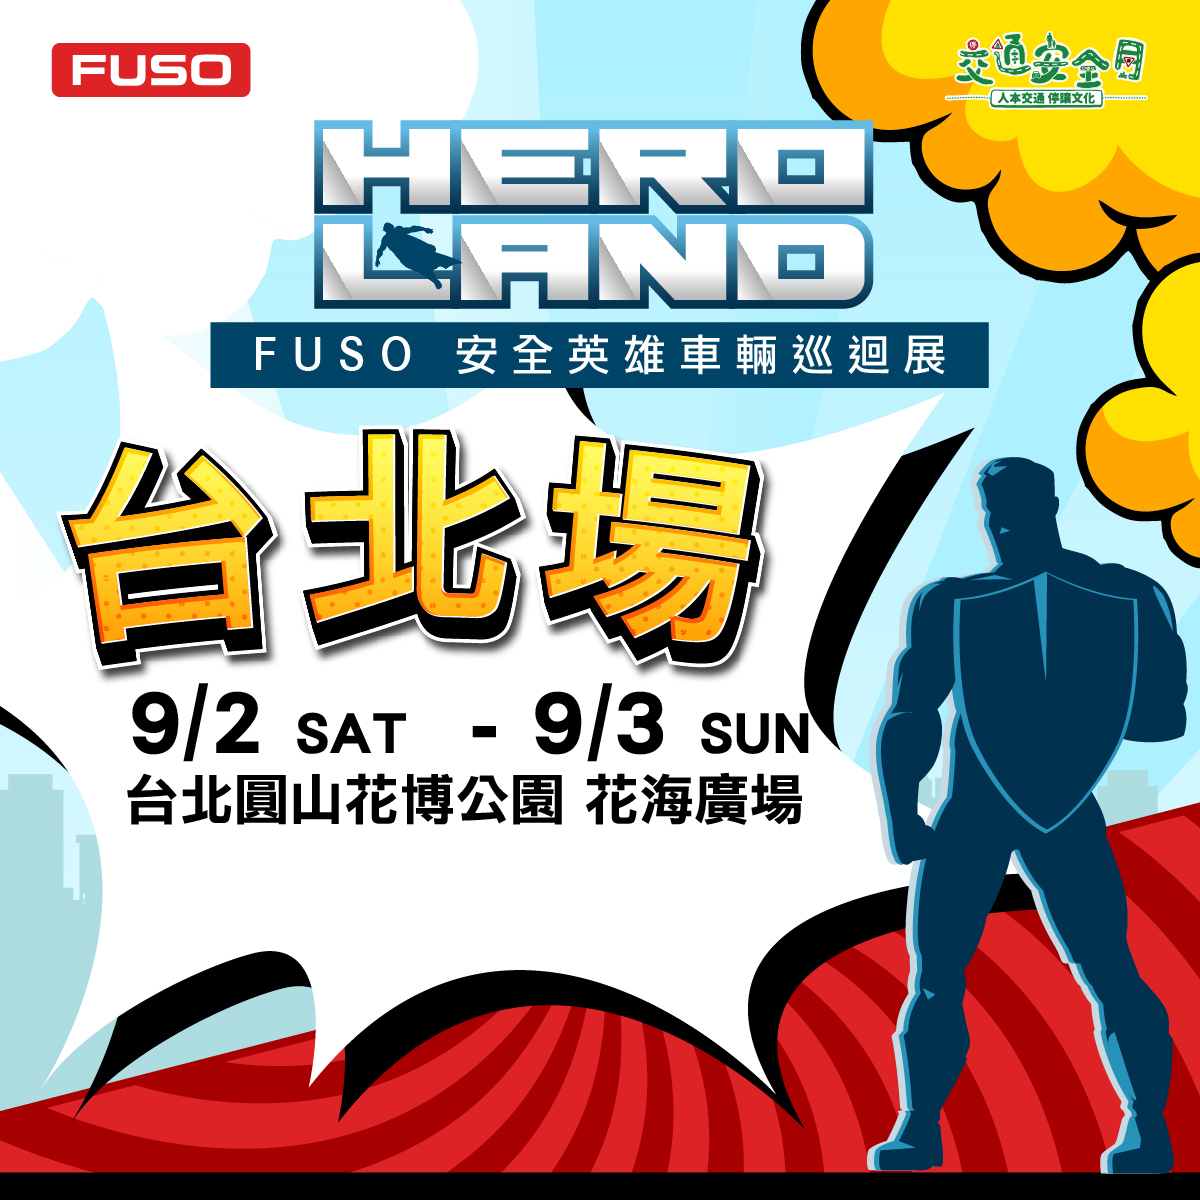 【圖3】『HERO LAND  FUSO安全英雄車輛巡迴展』於9月2日至3日在台北圓山花博公園舉辦.jpg